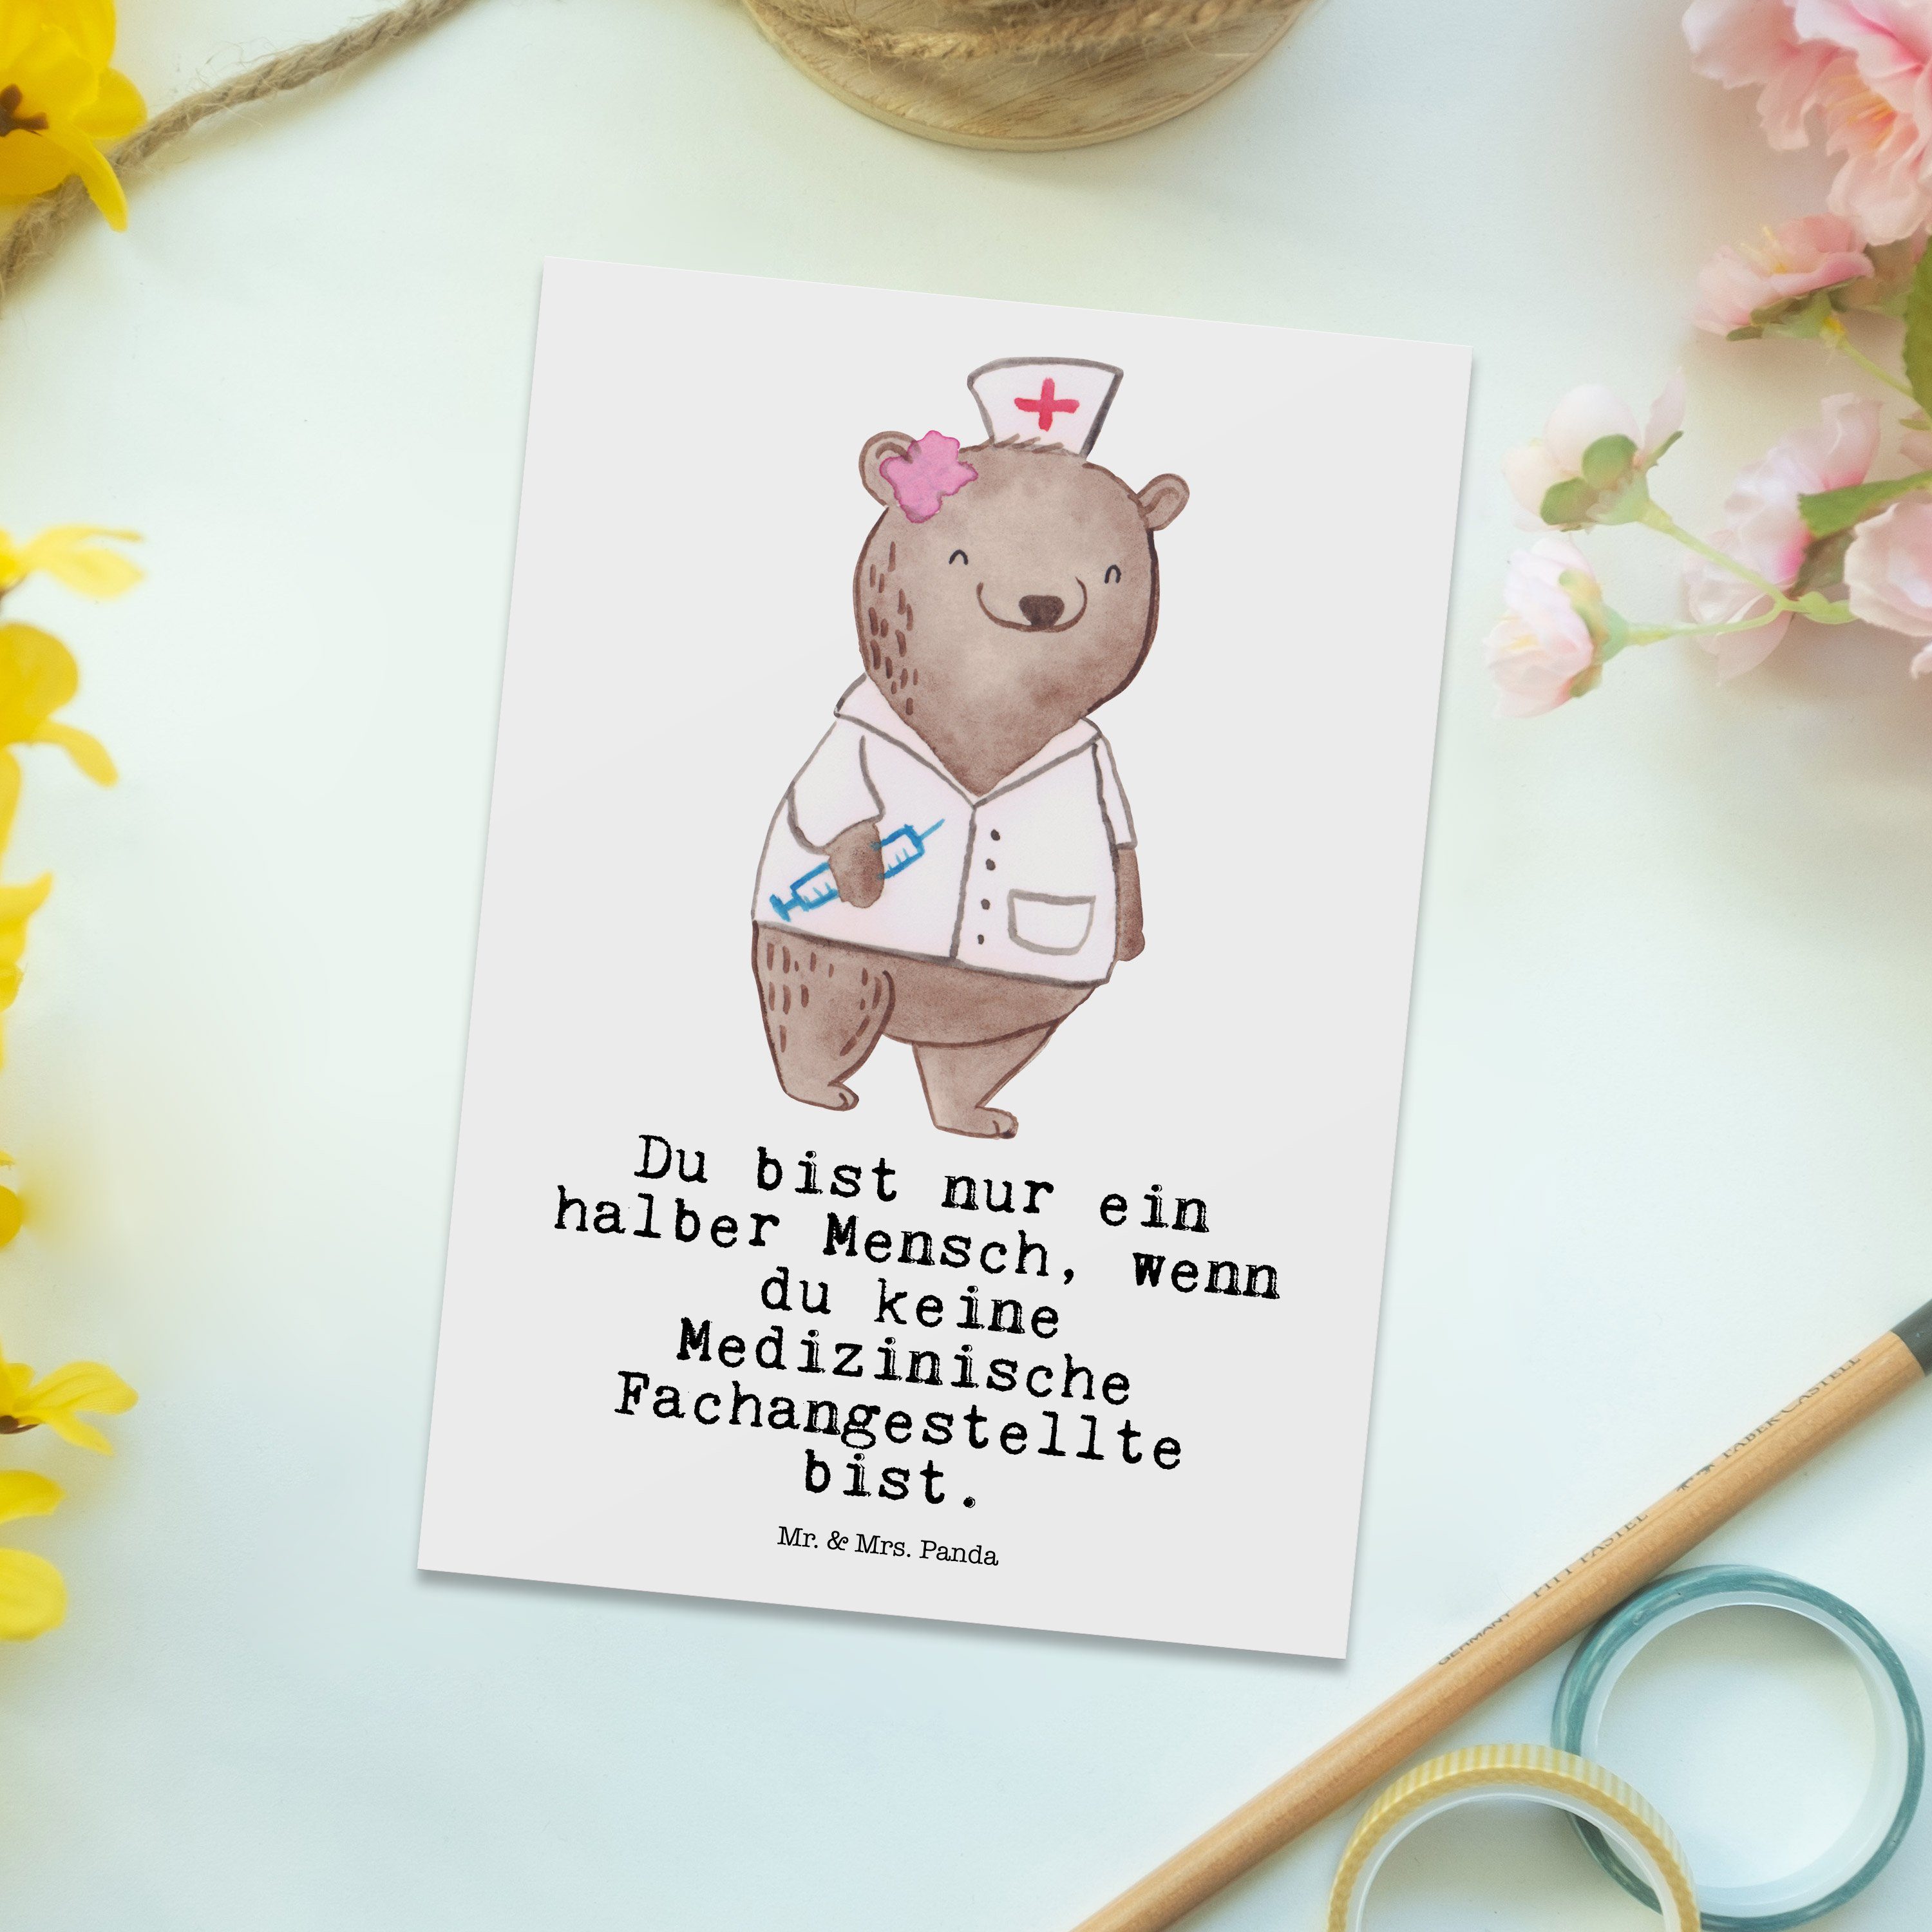 Mr. & Mrs. Medizinische Grußk Weiß Panda - mit Geschenk, Fachangestellte Beruf, - Herz Postkarte